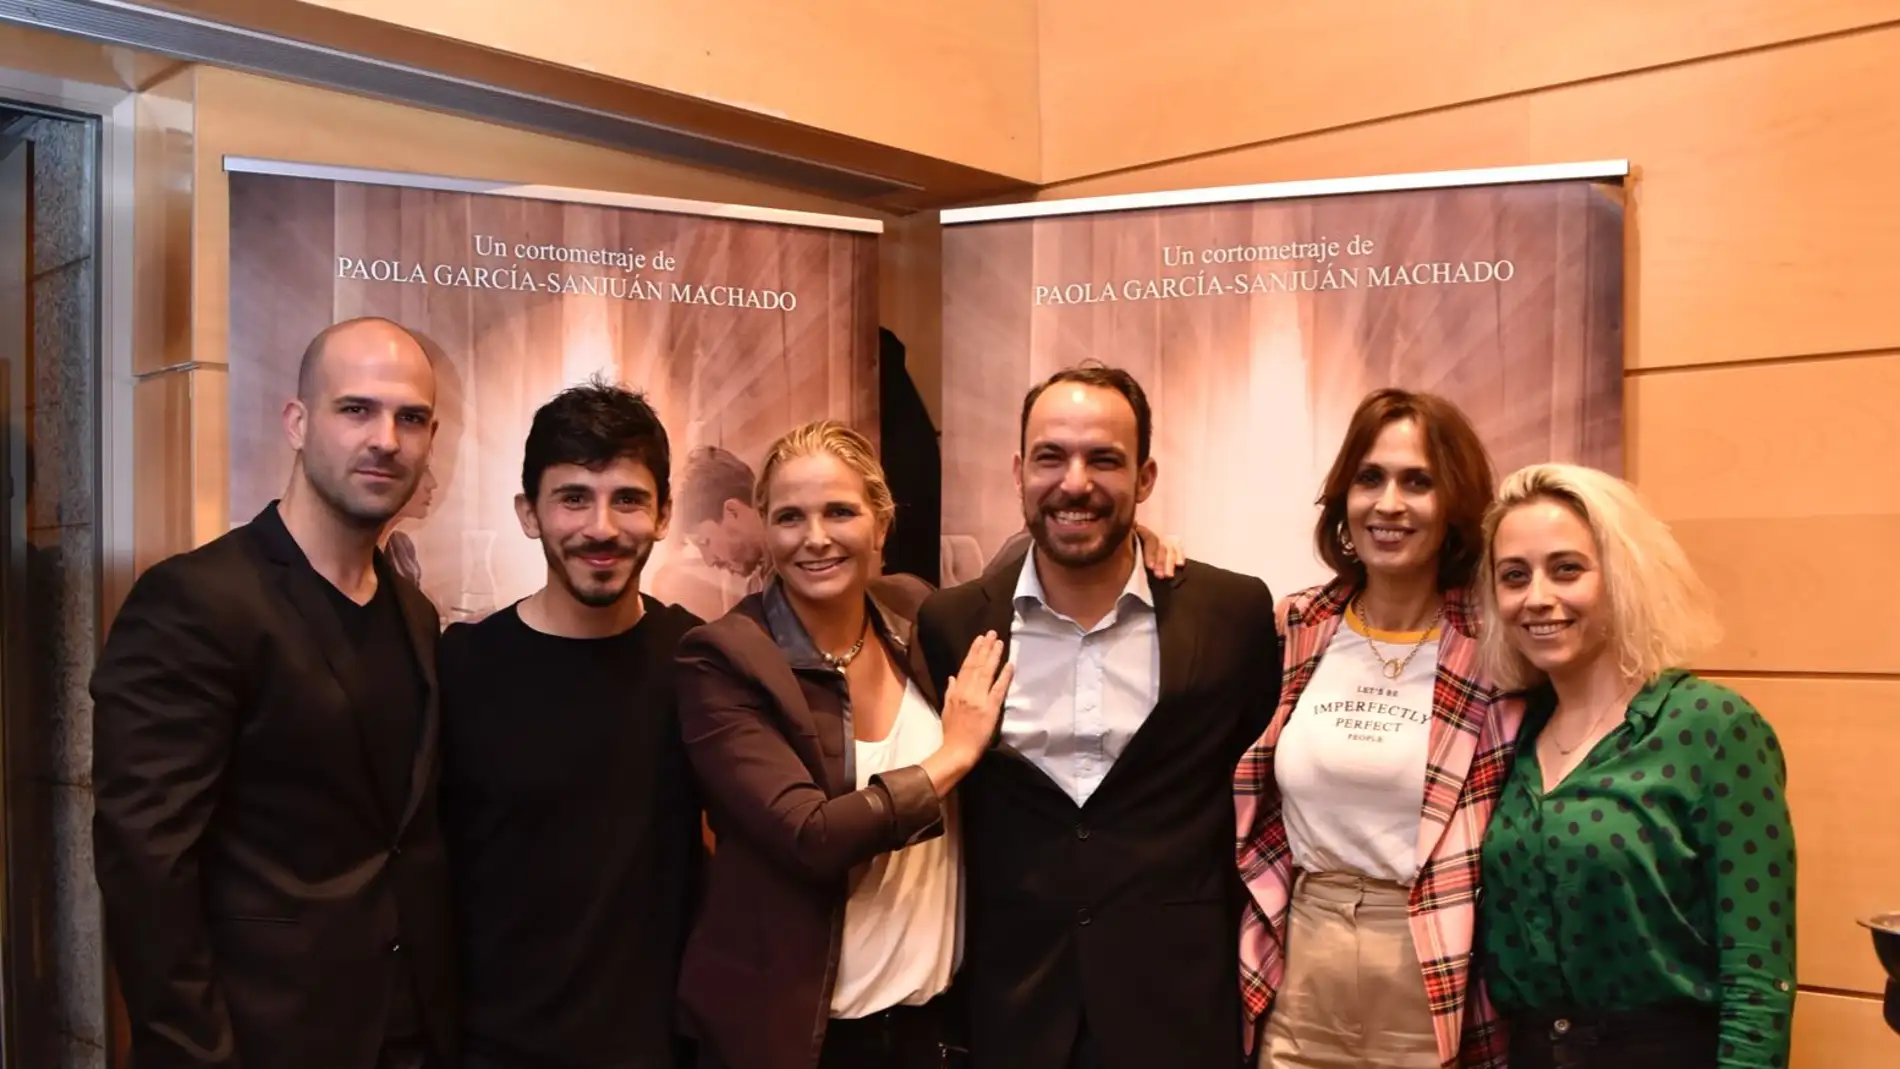 Mario Mayo, Víctor Sevilla, Paola García-Sanjuán Machado, Jorge Ramos, Lola Marceli y Paula García-Sabo